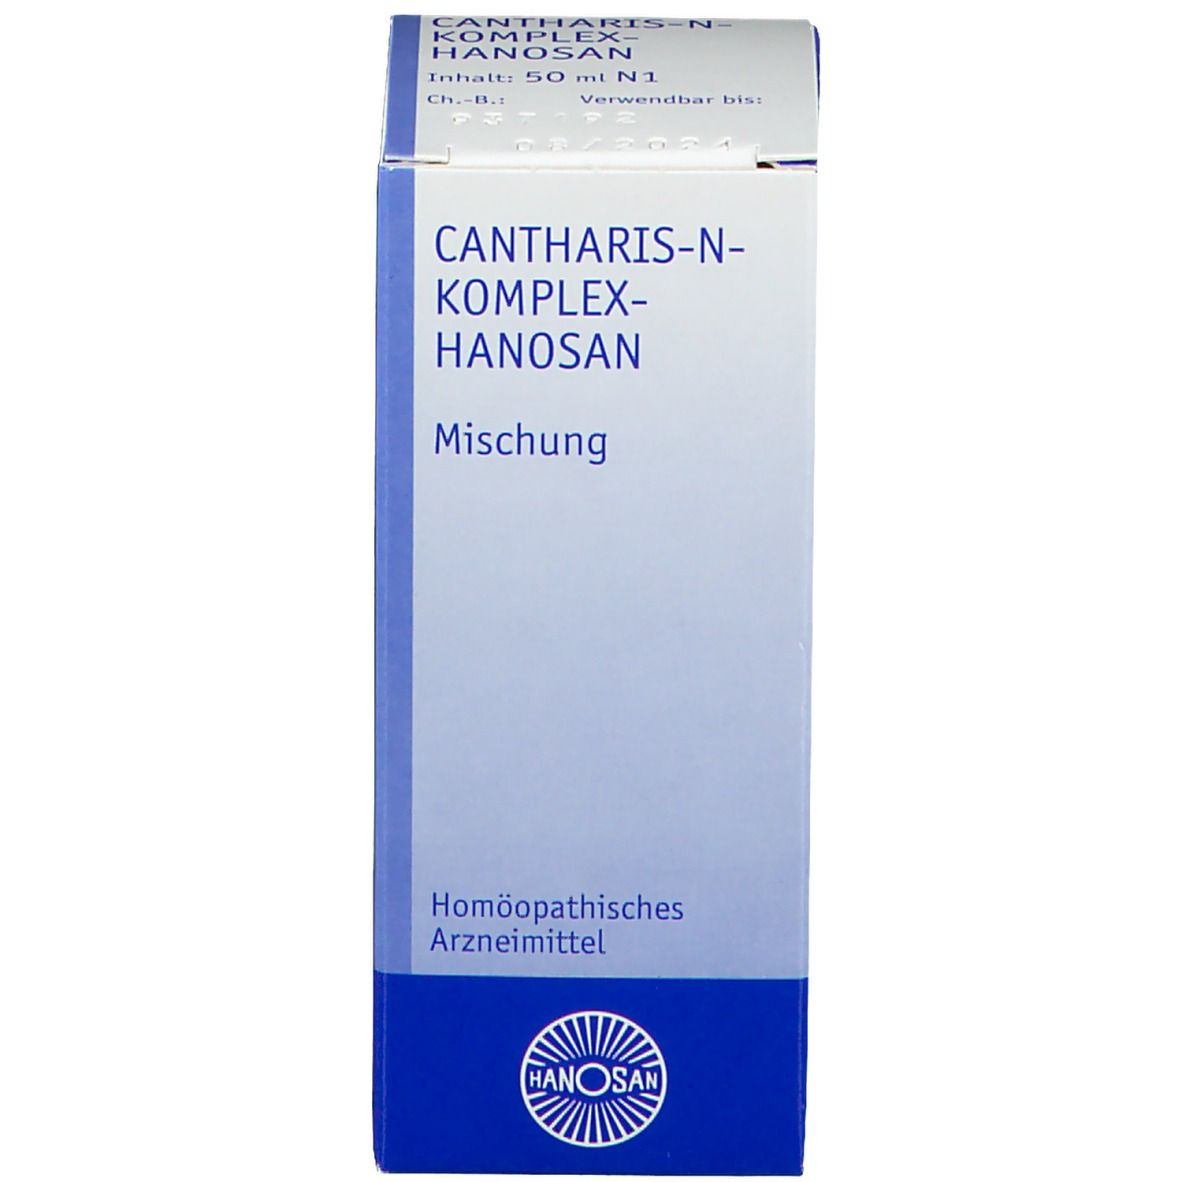 Cantharis-N-Komplex-Hanosan